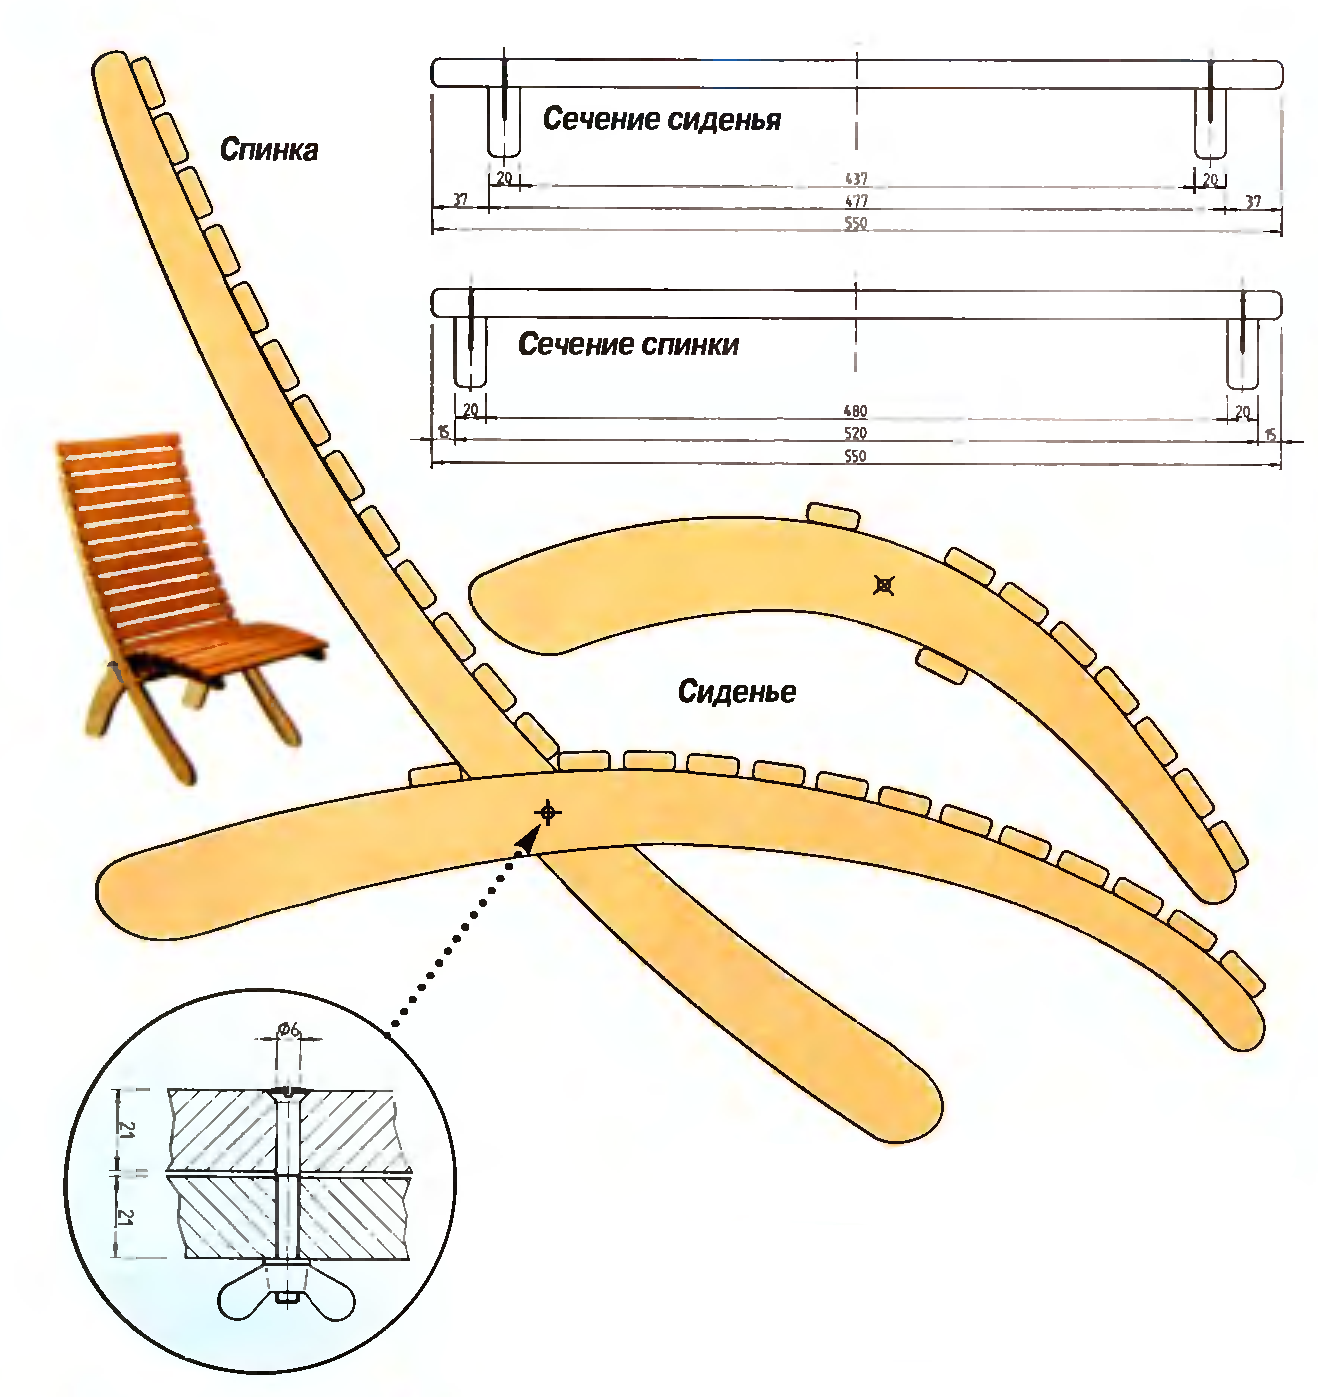 Кресло-качалка из дерева или фанеры своими руками: чертеж, схема, шаблон